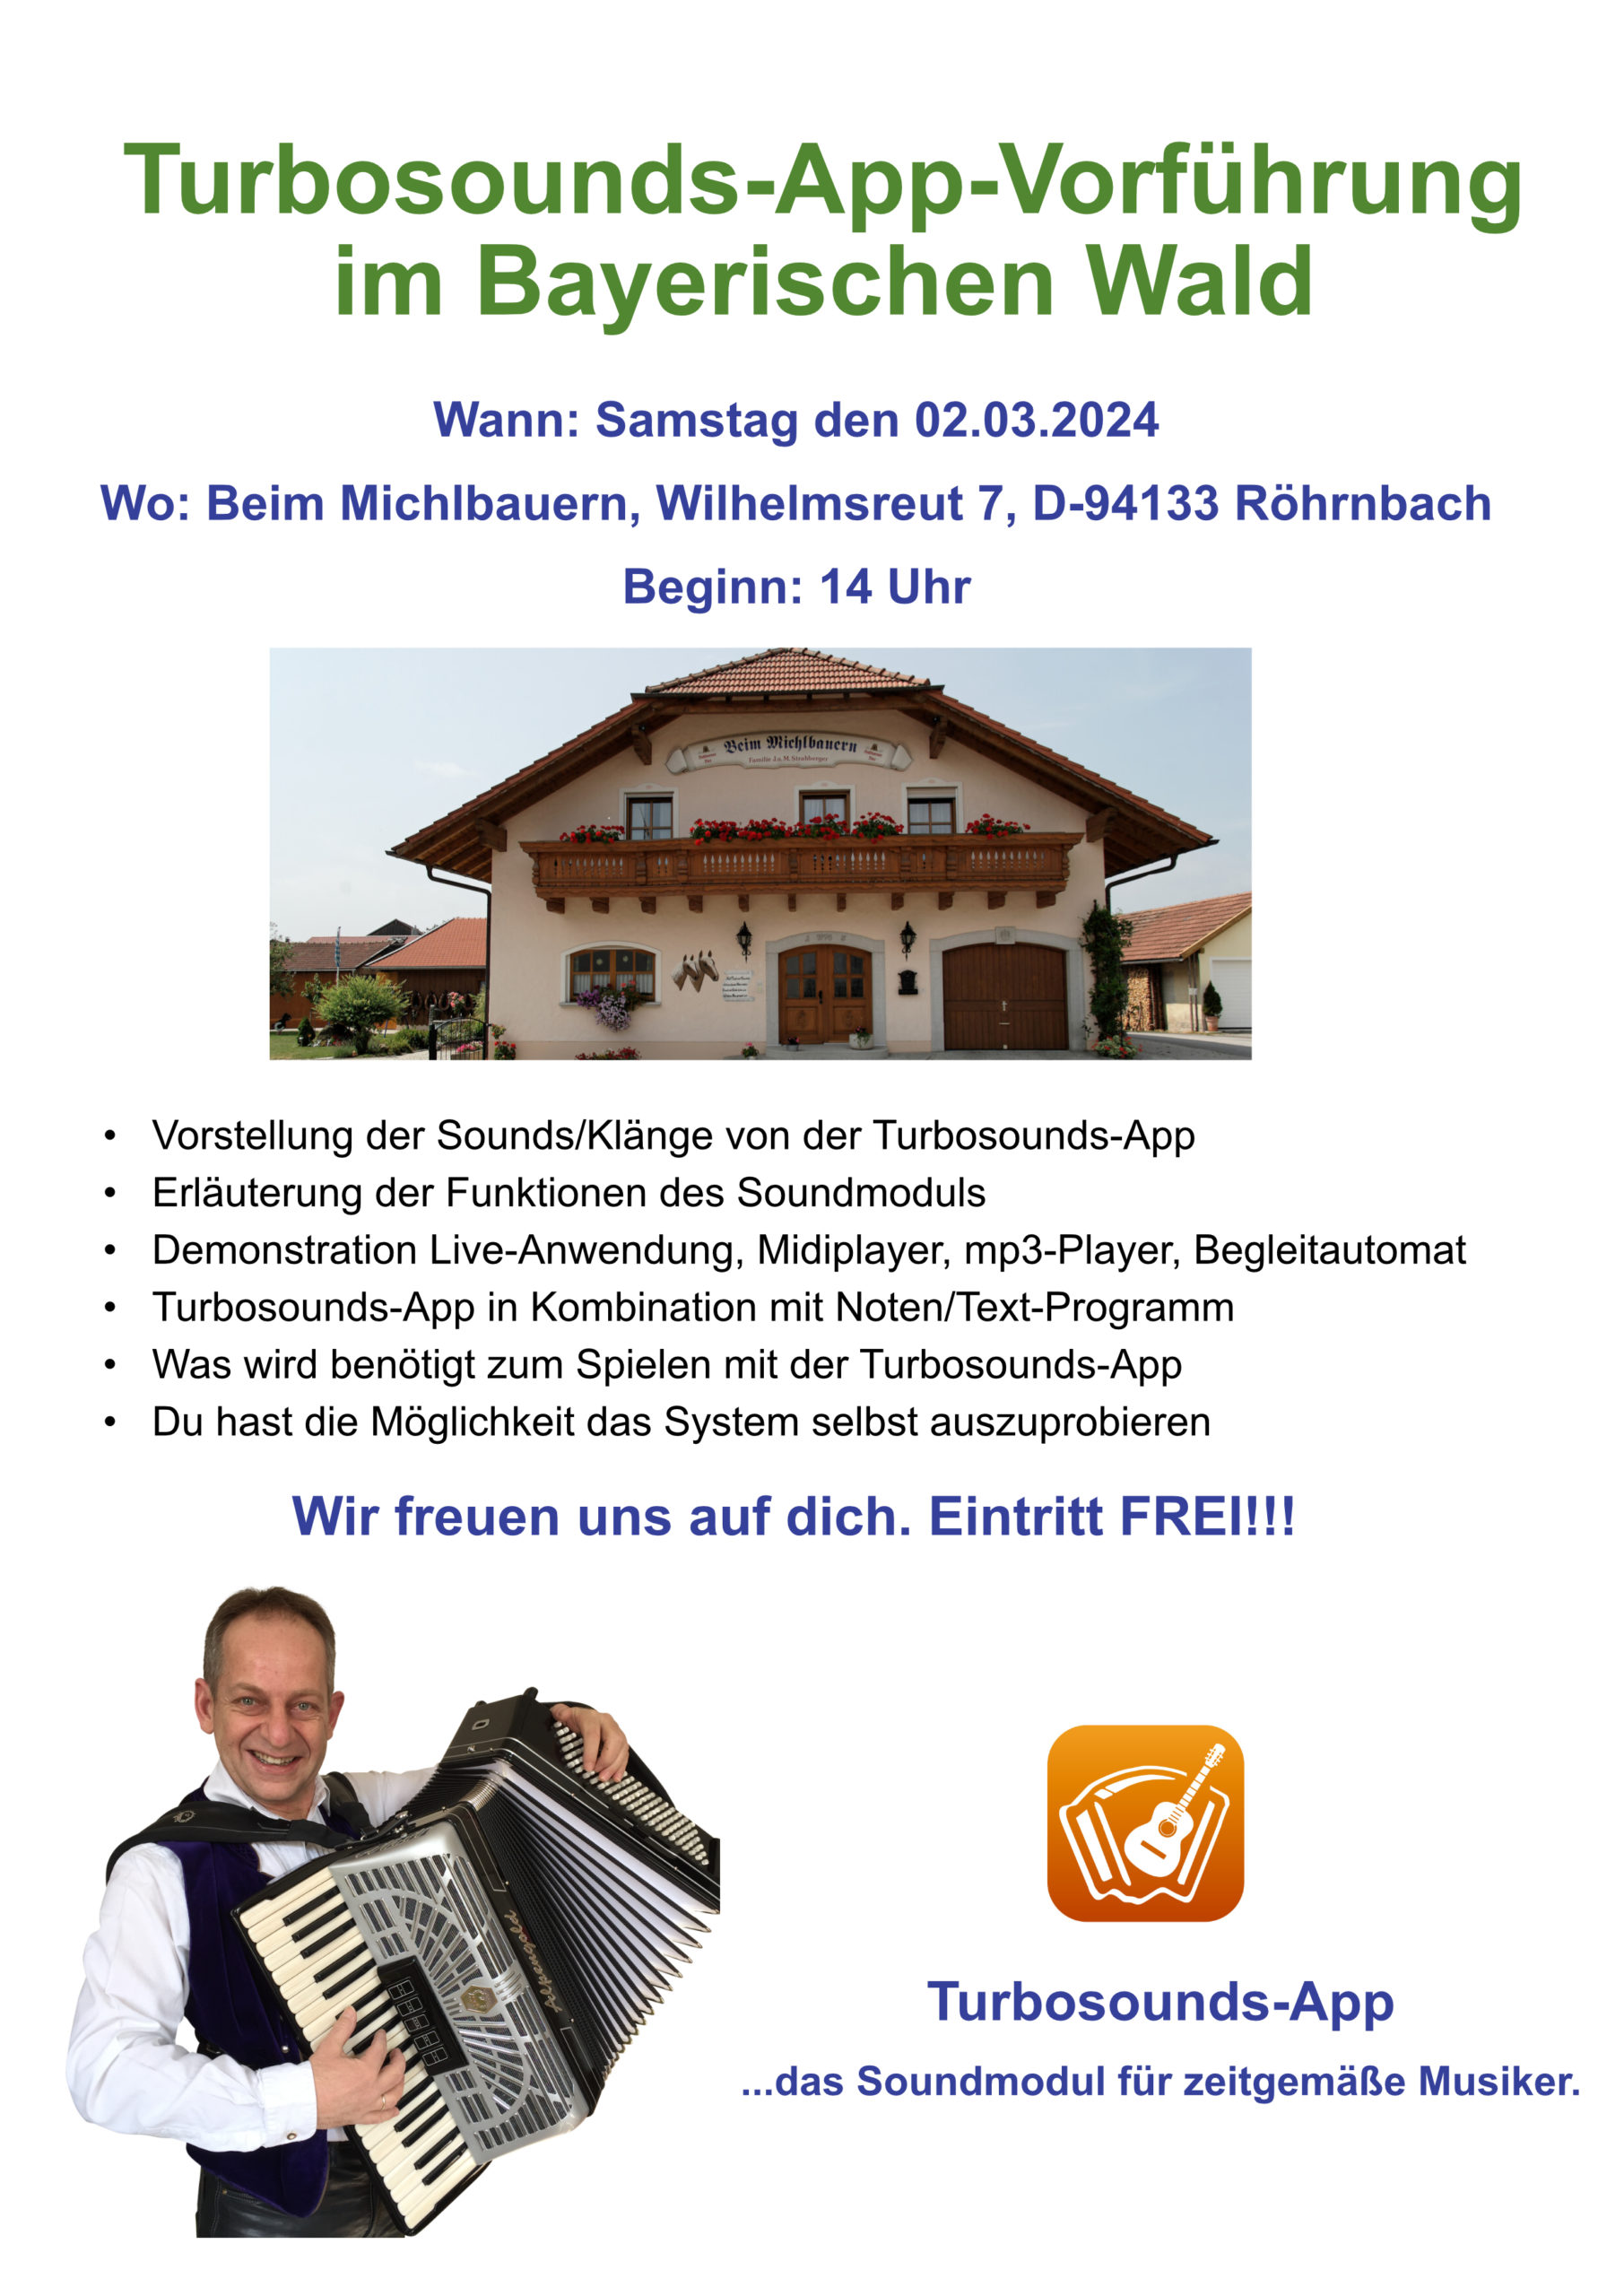 Turbosounds-App-Vorführung im Bayerischen Wald Beim Michlbauern am 02.03.2024